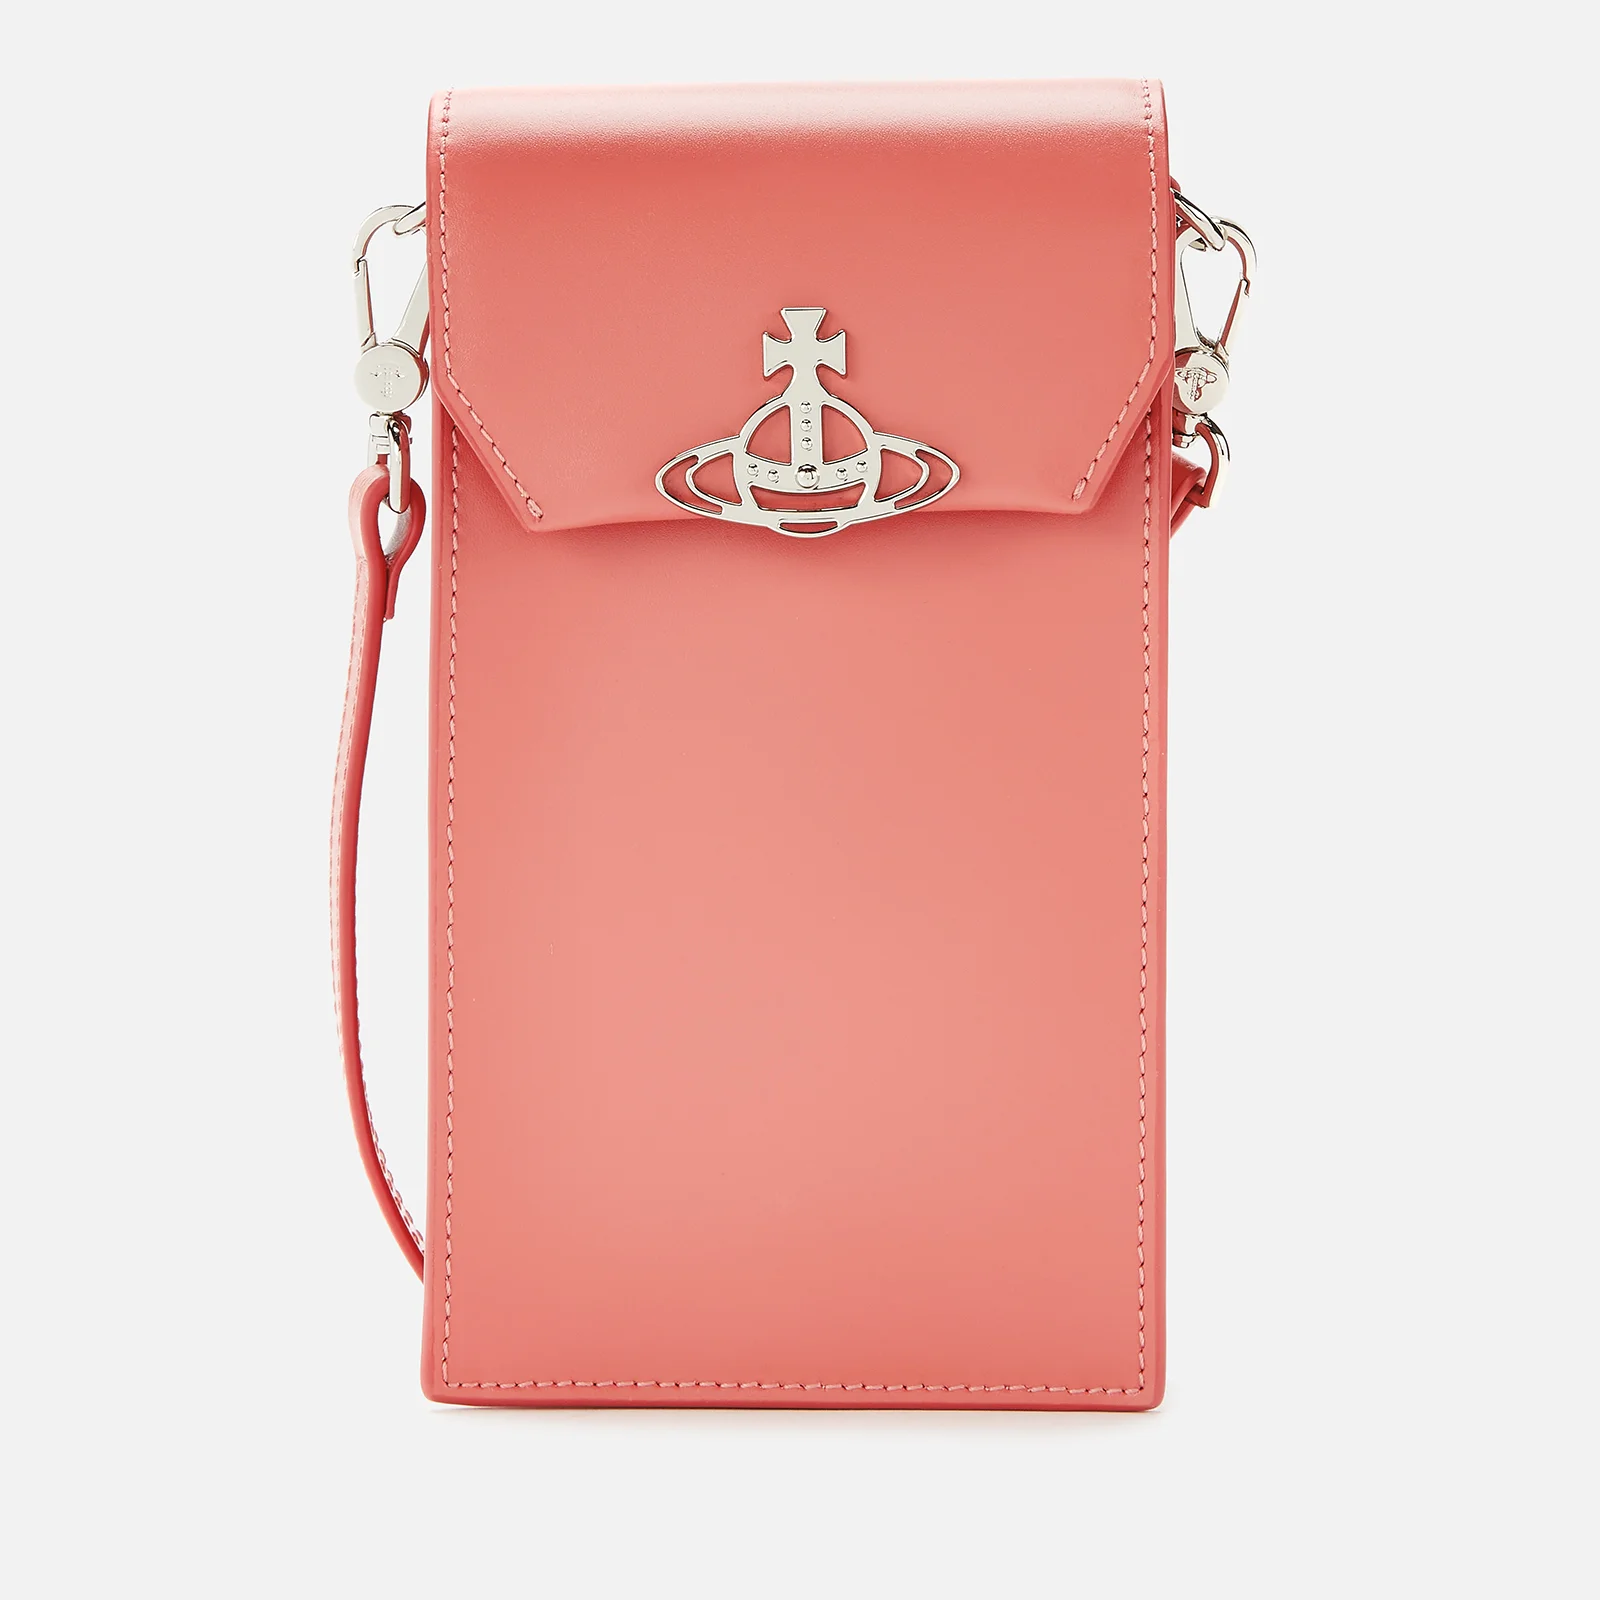 Vivienne Westwood Women's Jordan Phone Bag - Pink Image 1